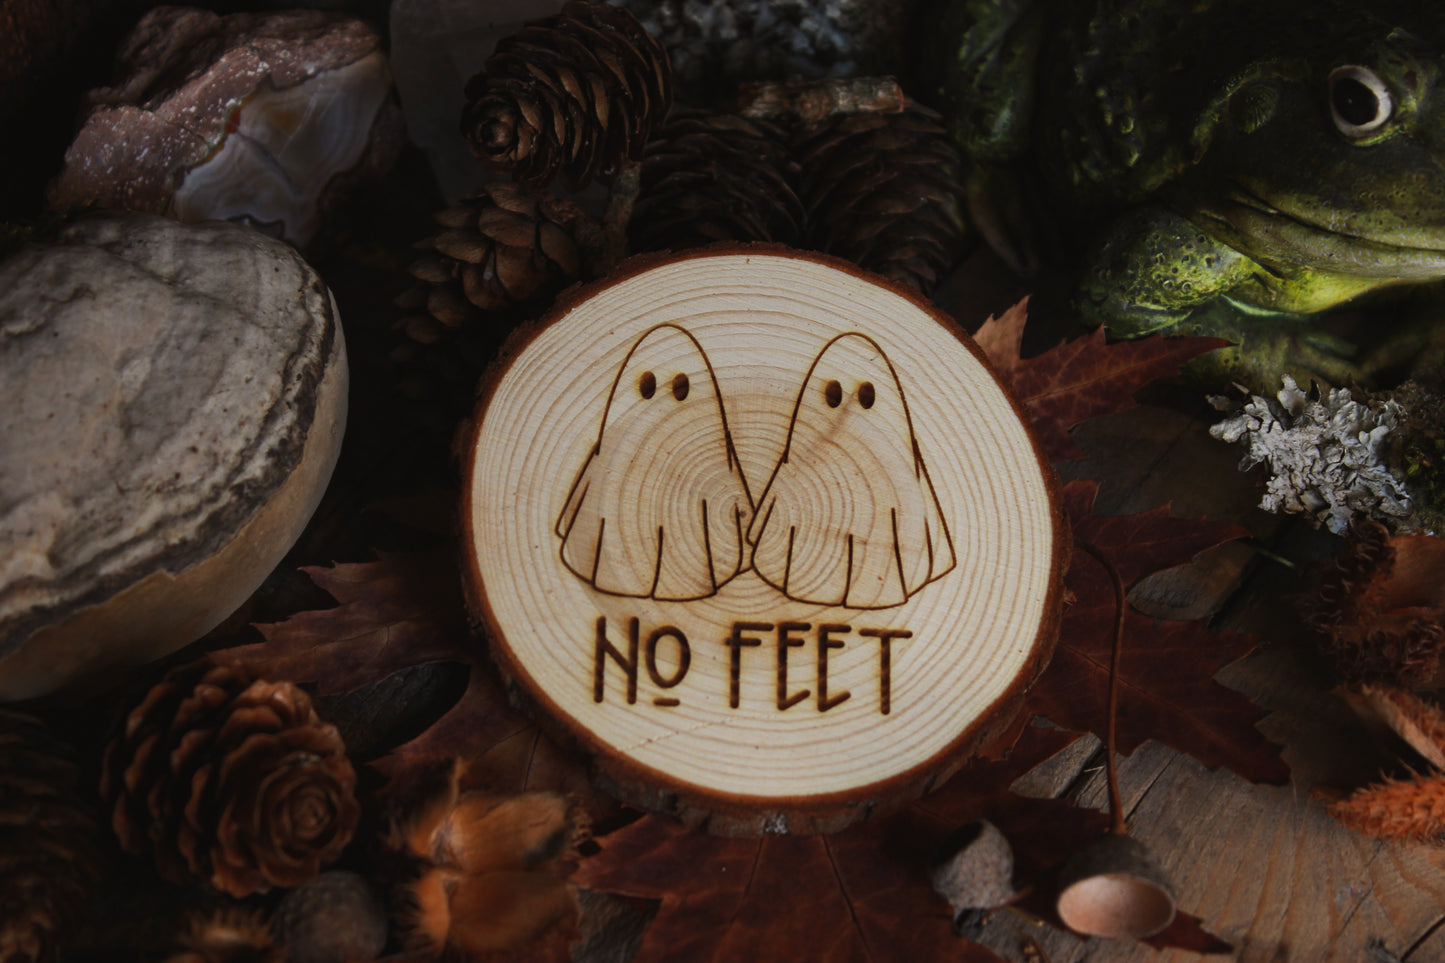 Wandbild aus Holz "No Feet" Zwei Holzscheiben mit Geistermotiv "NO FEET" steht darunter, umgeben von Kräutern und Kristallen, alles steht auf einem braunen Tisch, rechts sieht man eine Kröte